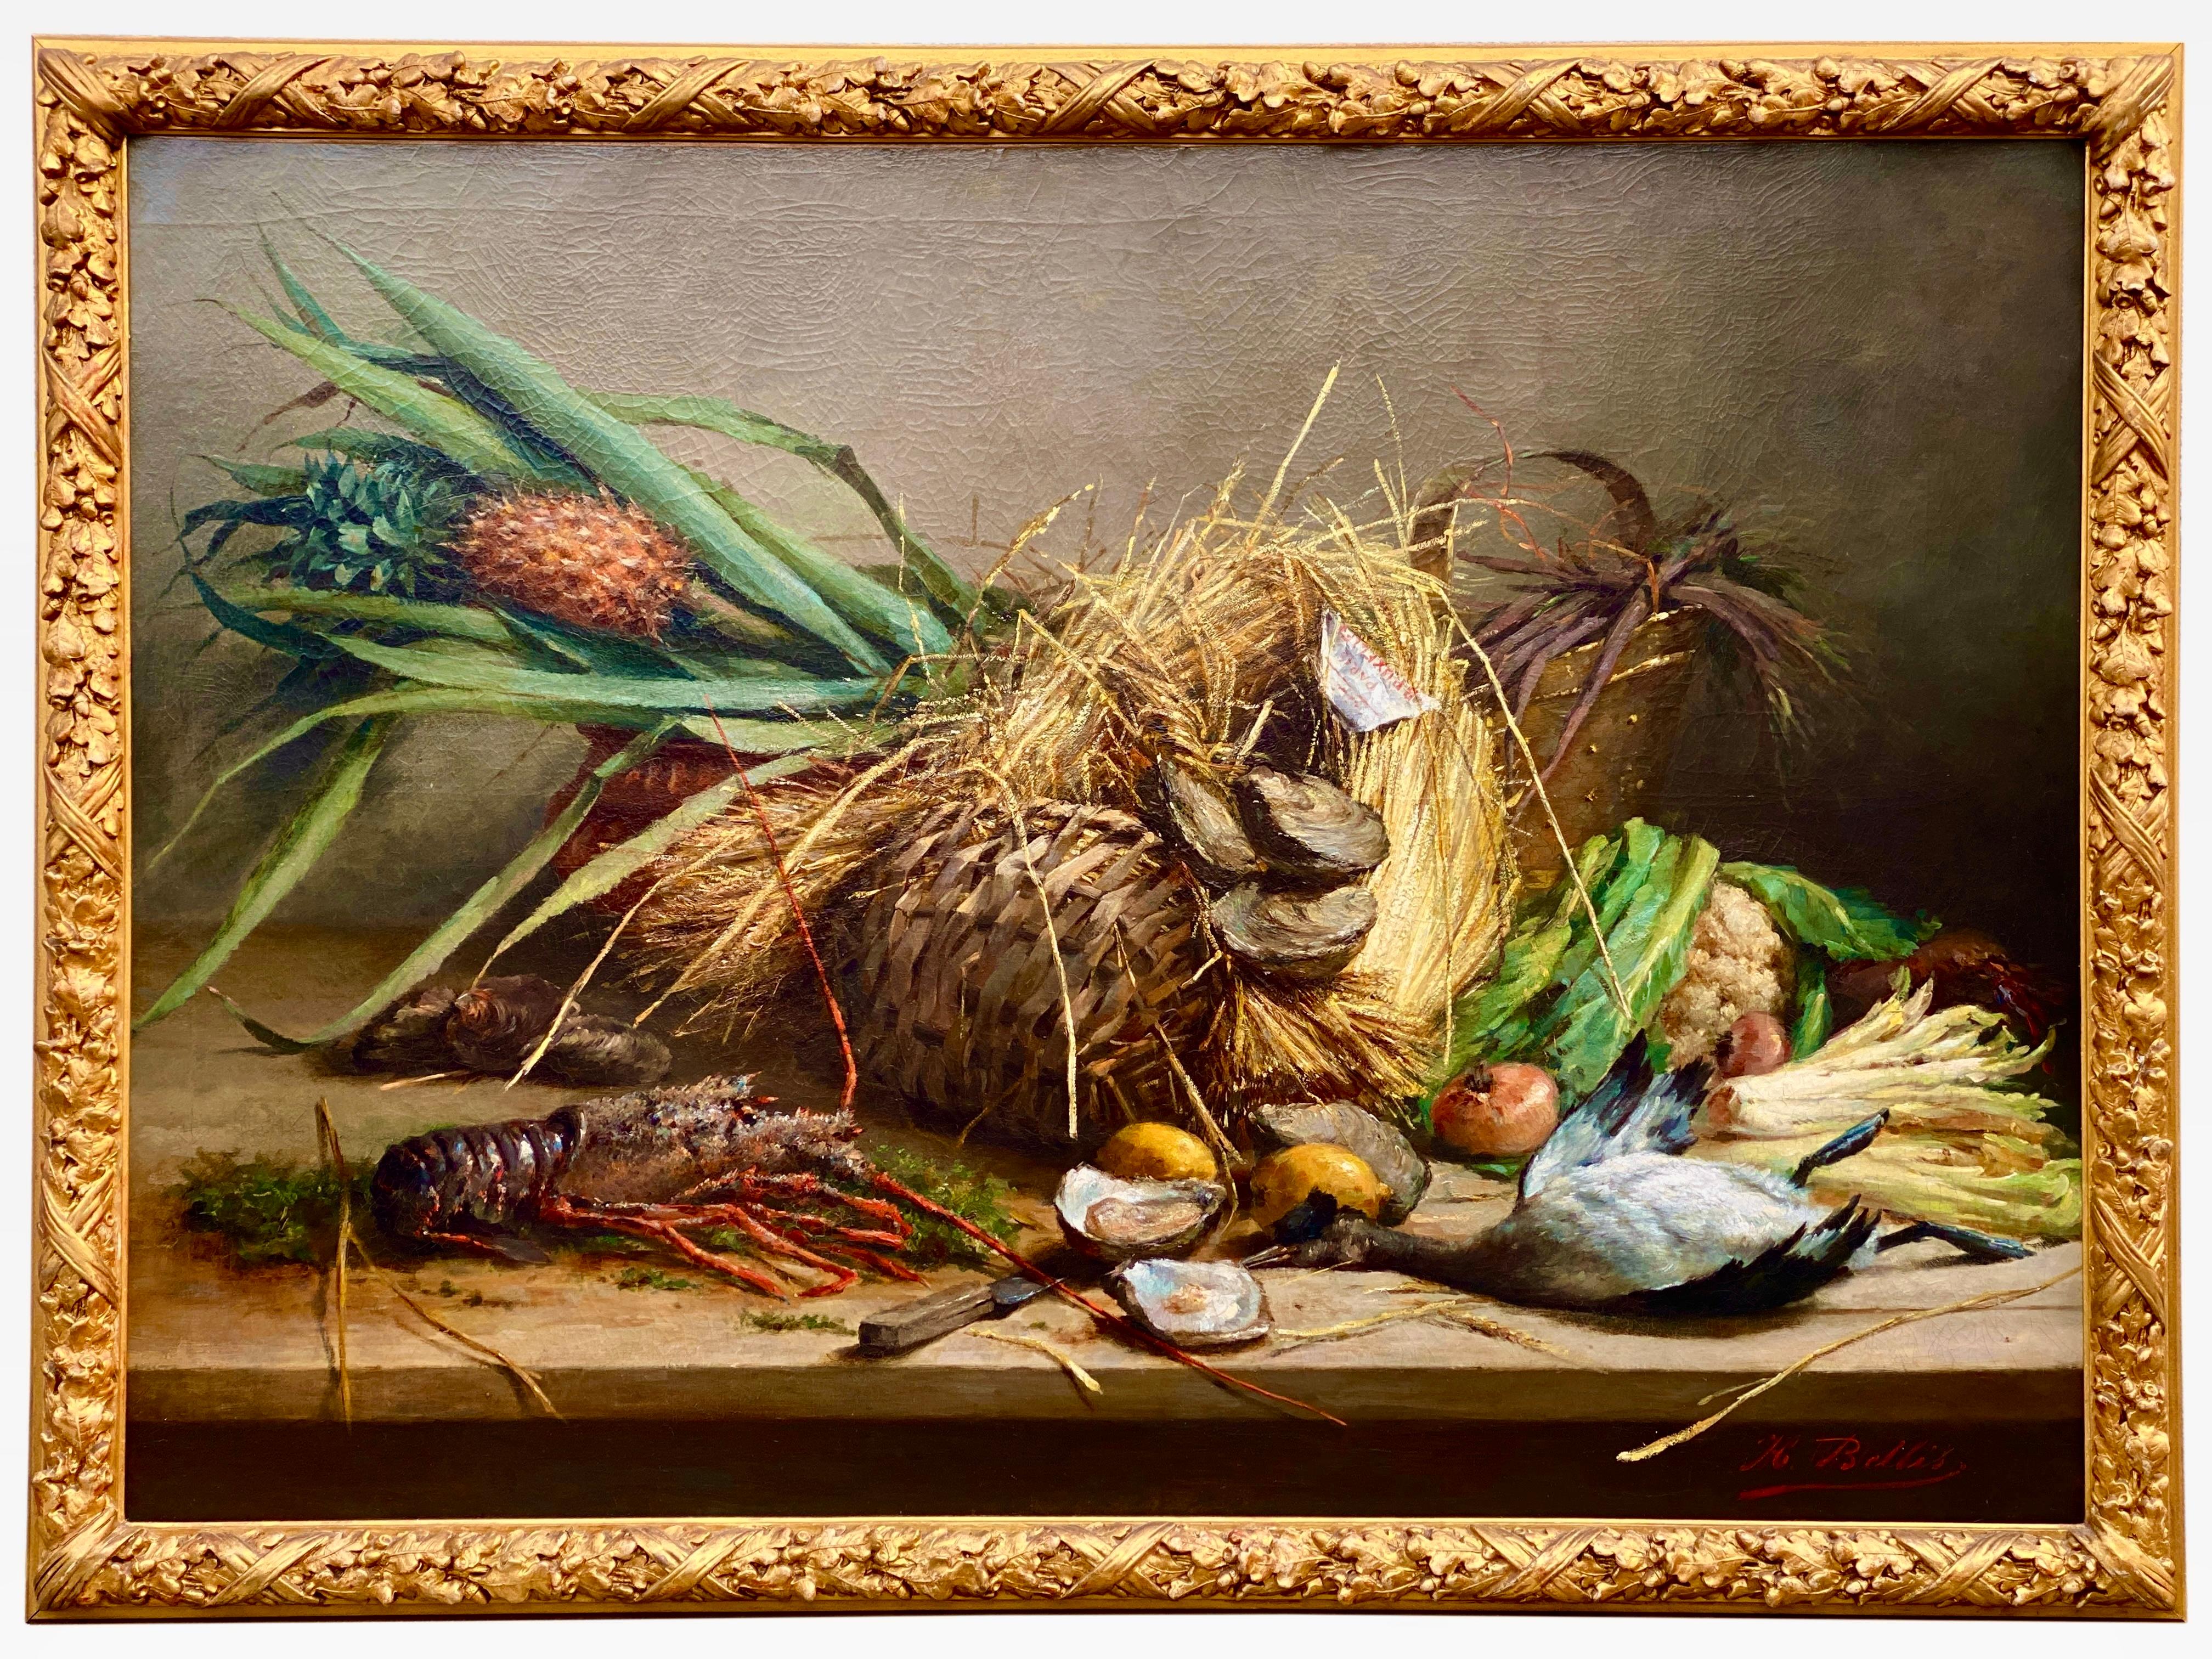 Hubert Bellis
Bruxelles 1831 - 1902 Schaerbeek
Peintre belge

Nature morte au homard, aux huîtres et au canard

Signature : Signé en bas à droiteu2028
Médium : Huile sur toileu2028
Dimensions : Taille de l'image 100 x 140 cm, taille du cadre 114 x